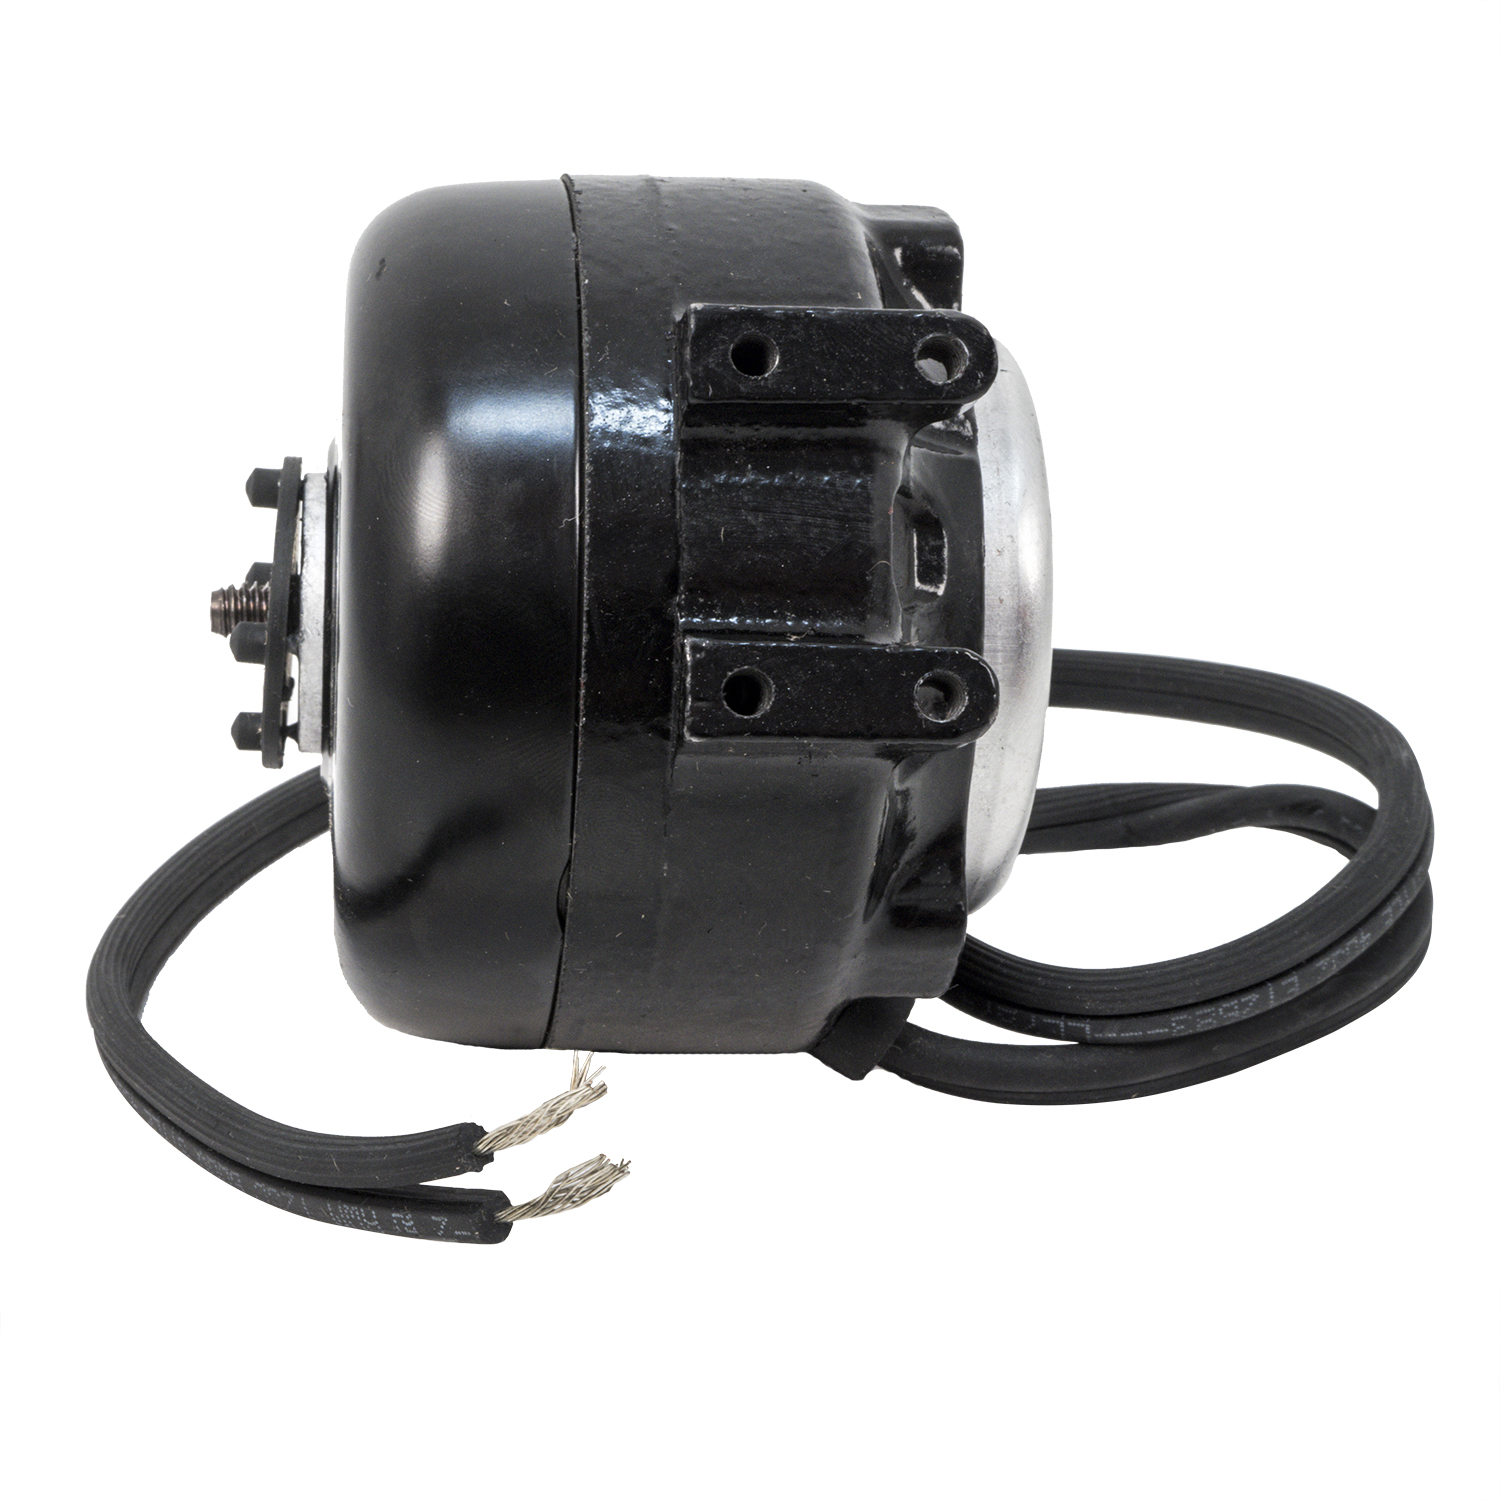 65119 Packard Unit Bearing Fan Motor 5 Watts 115 Volts 1550 RPM for sale online 